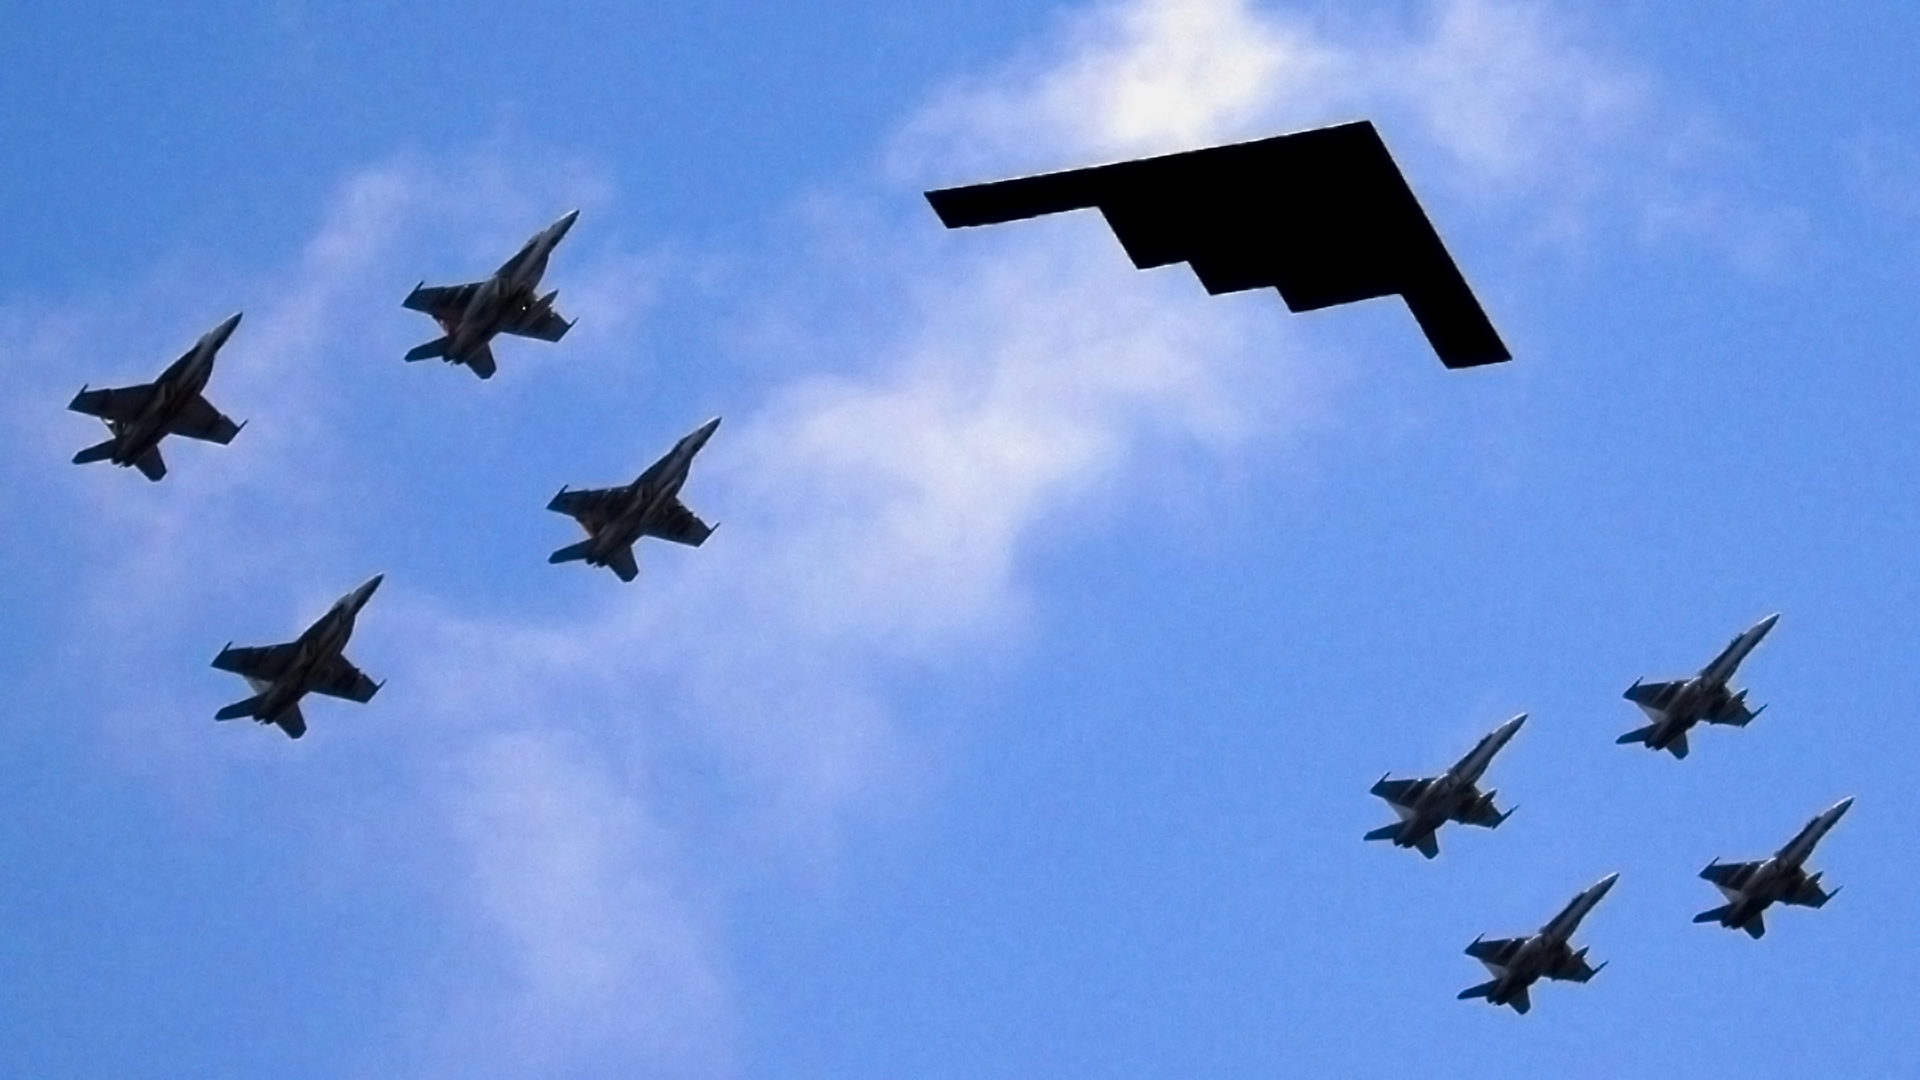 Скачать обои бесплатно Военные, Авиасалон, Военный Самолет картинка на рабочий стол ПК